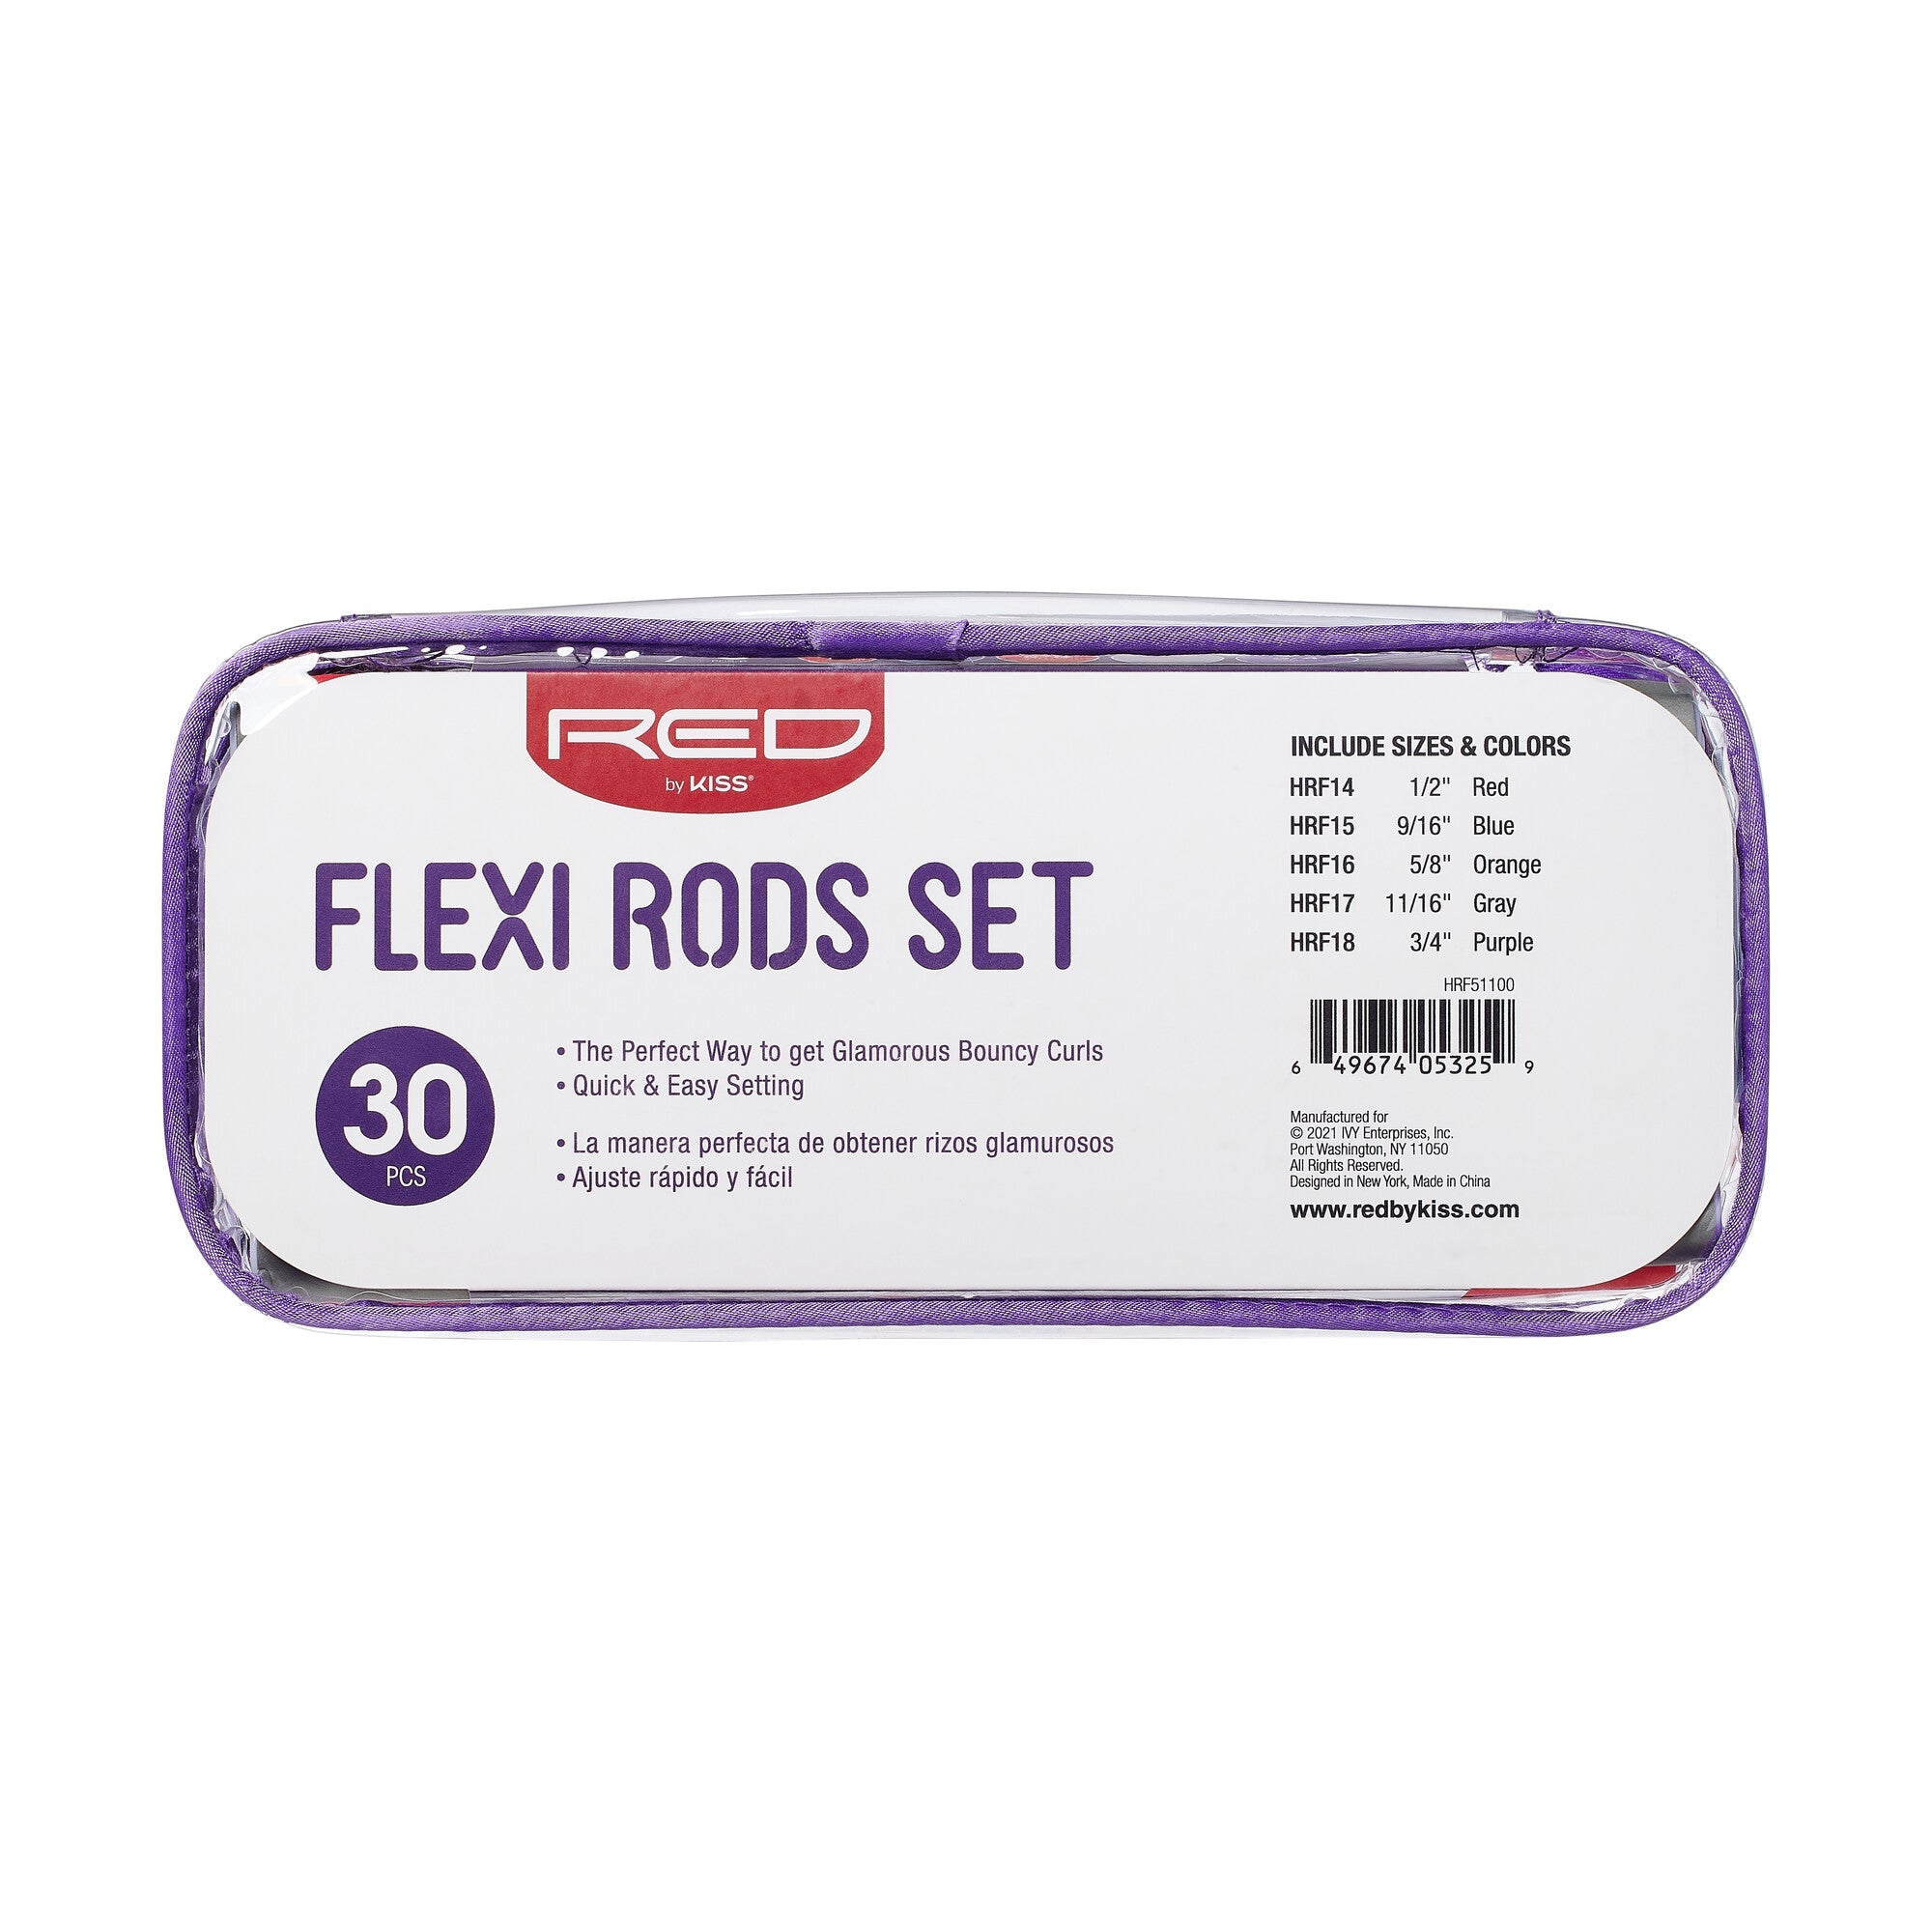 RED FLEXI RODS 10" SETS 30PCS (6PCS/EA)